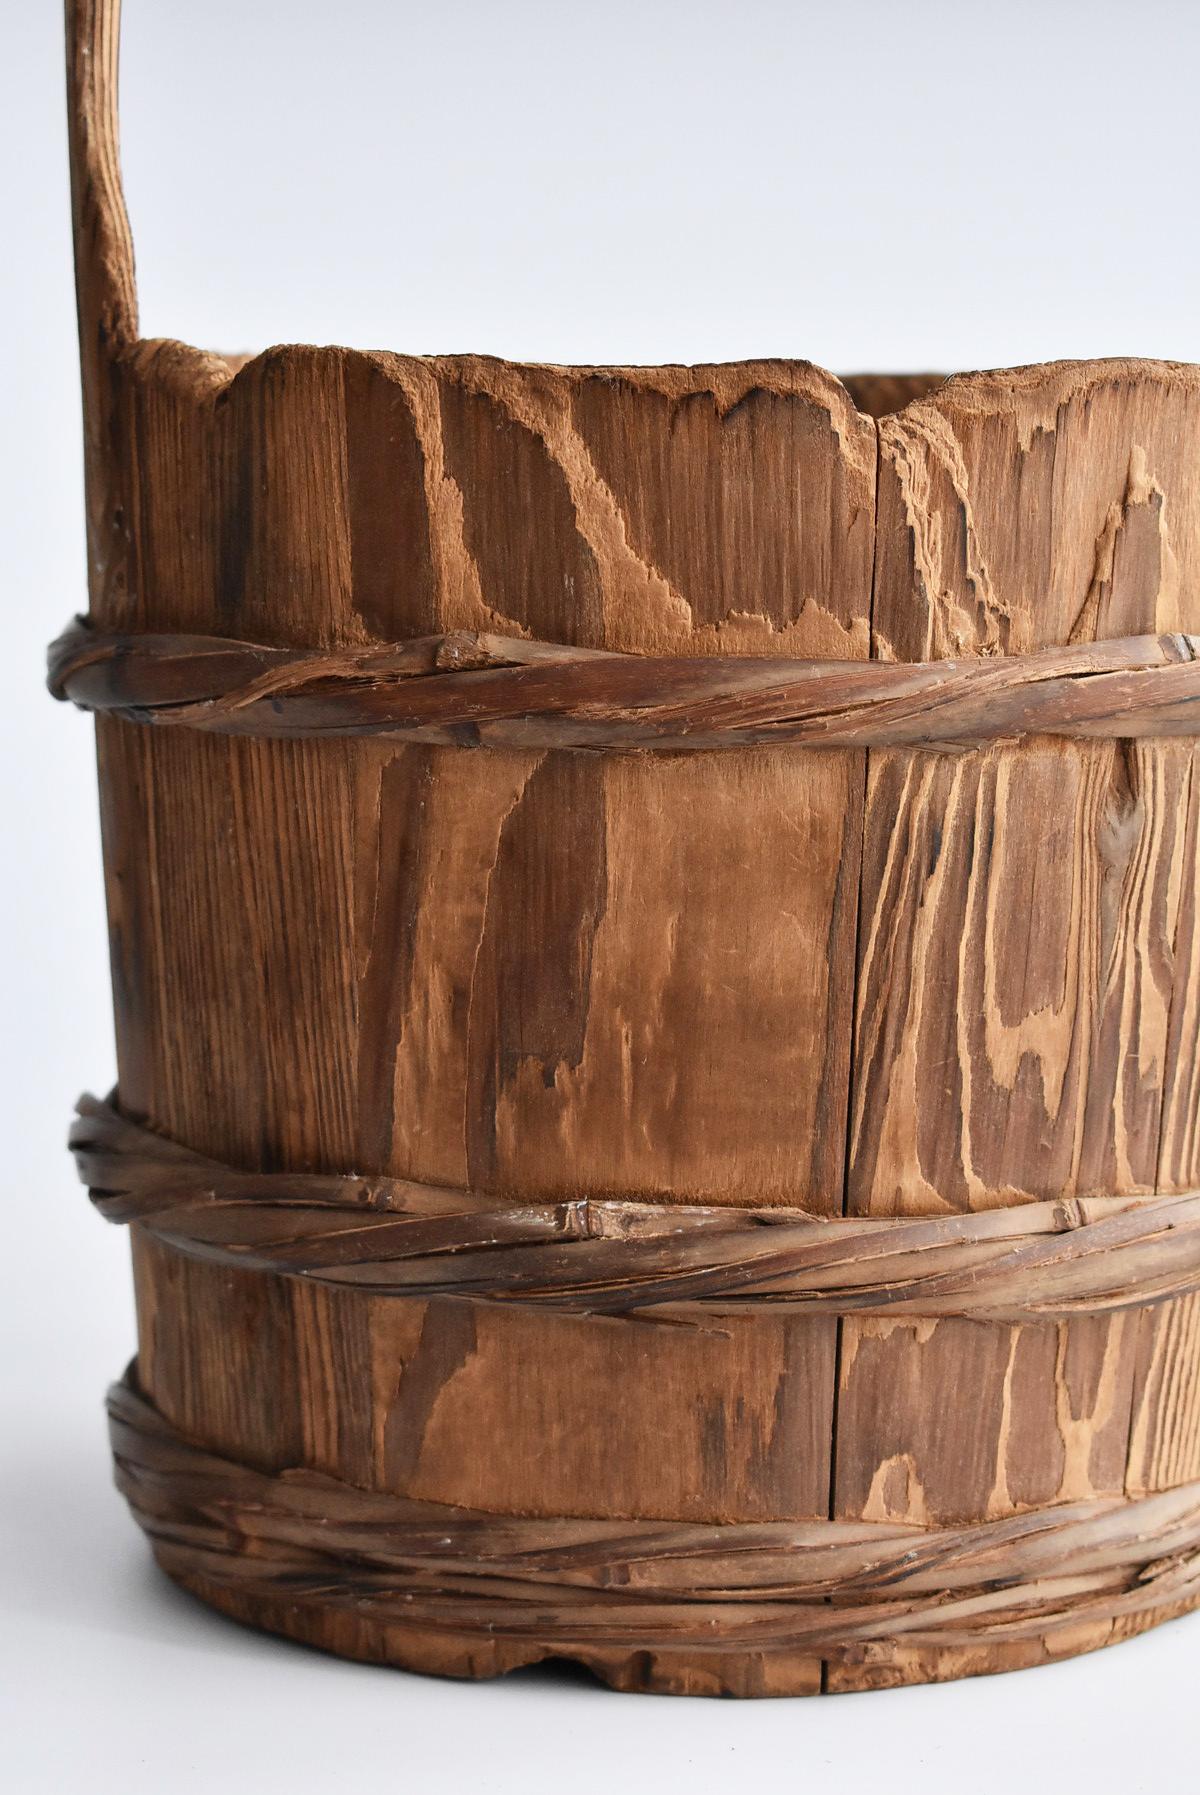 Japanese Old Wooden Bucket /Antique Vase /Wabi-Sabi Old Folk Implement 2